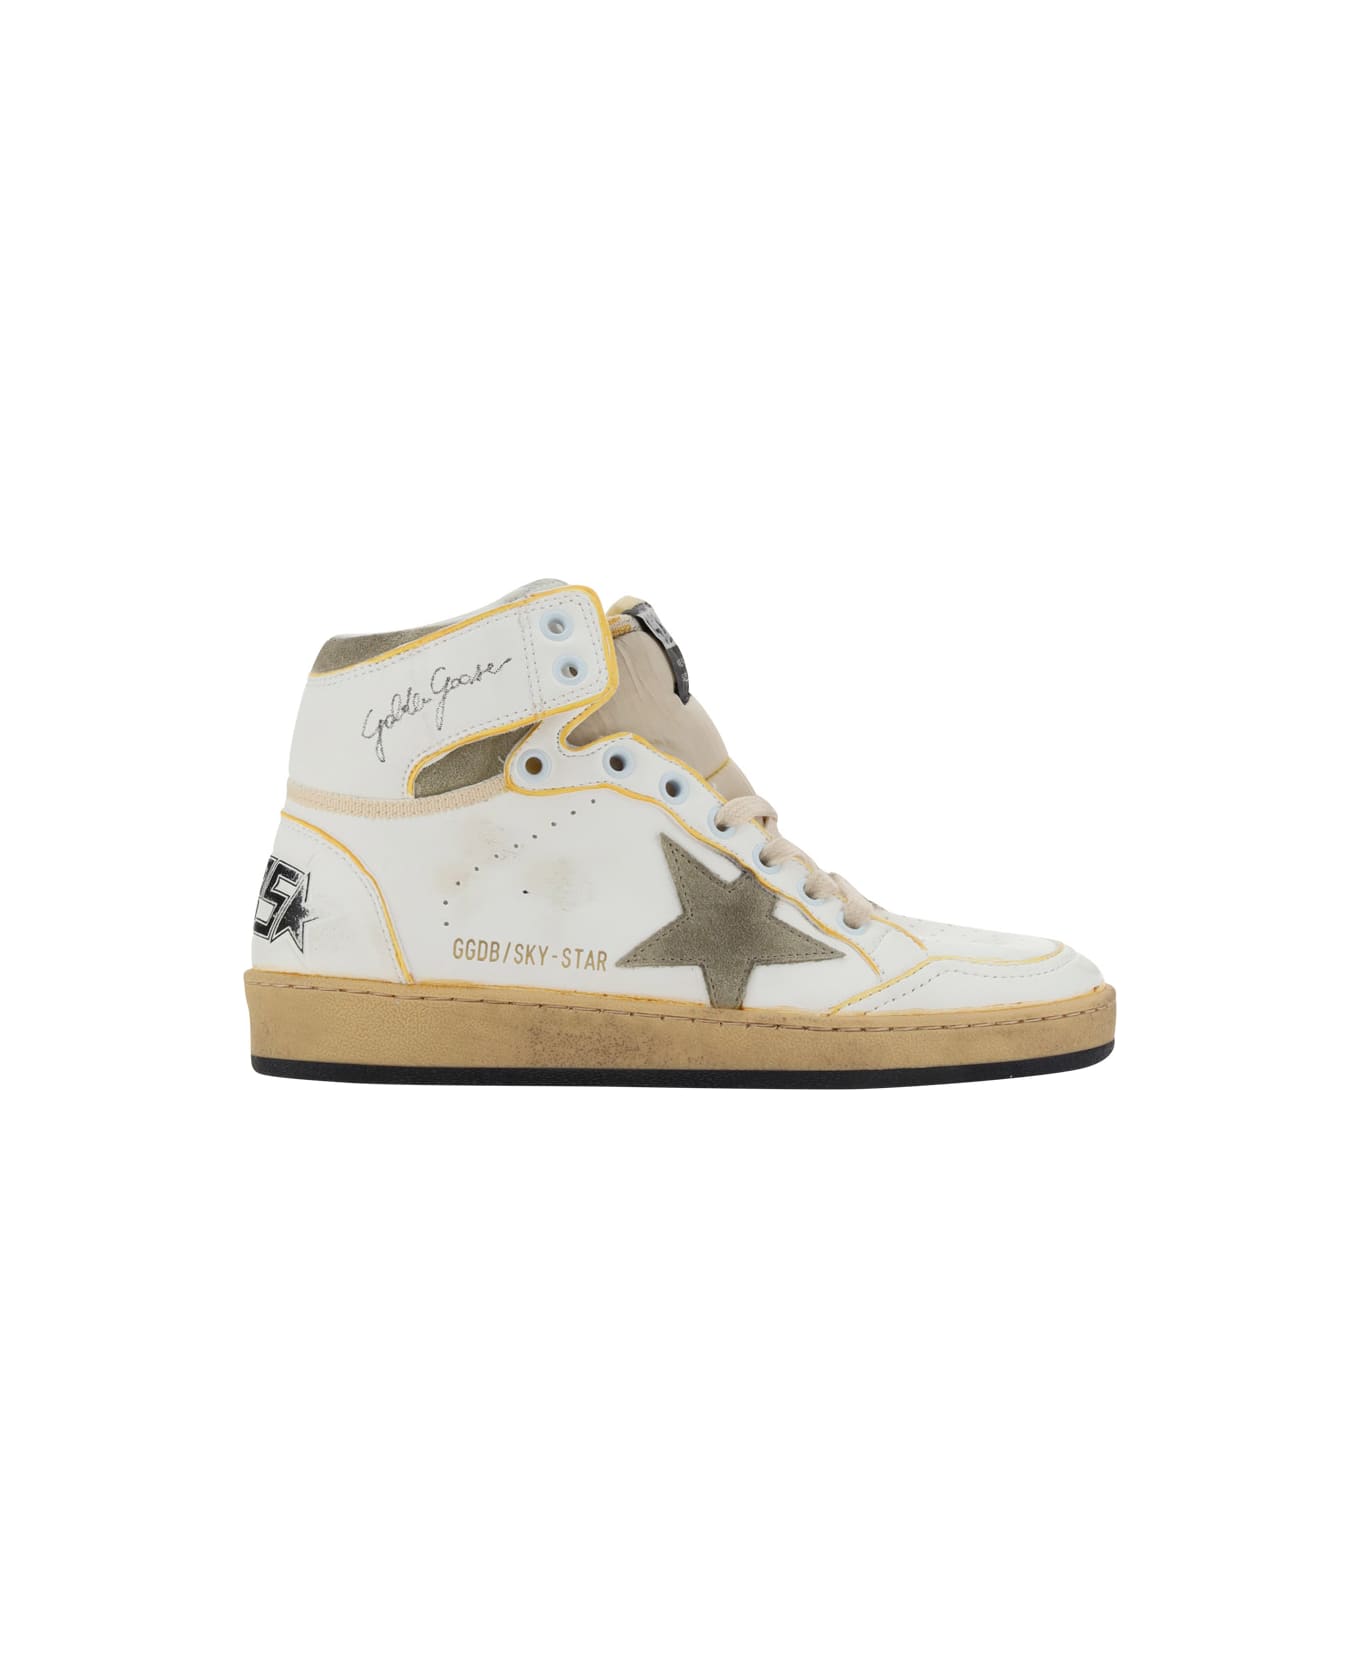 Golden Goose Sky Star Sneakers - White スニーカー